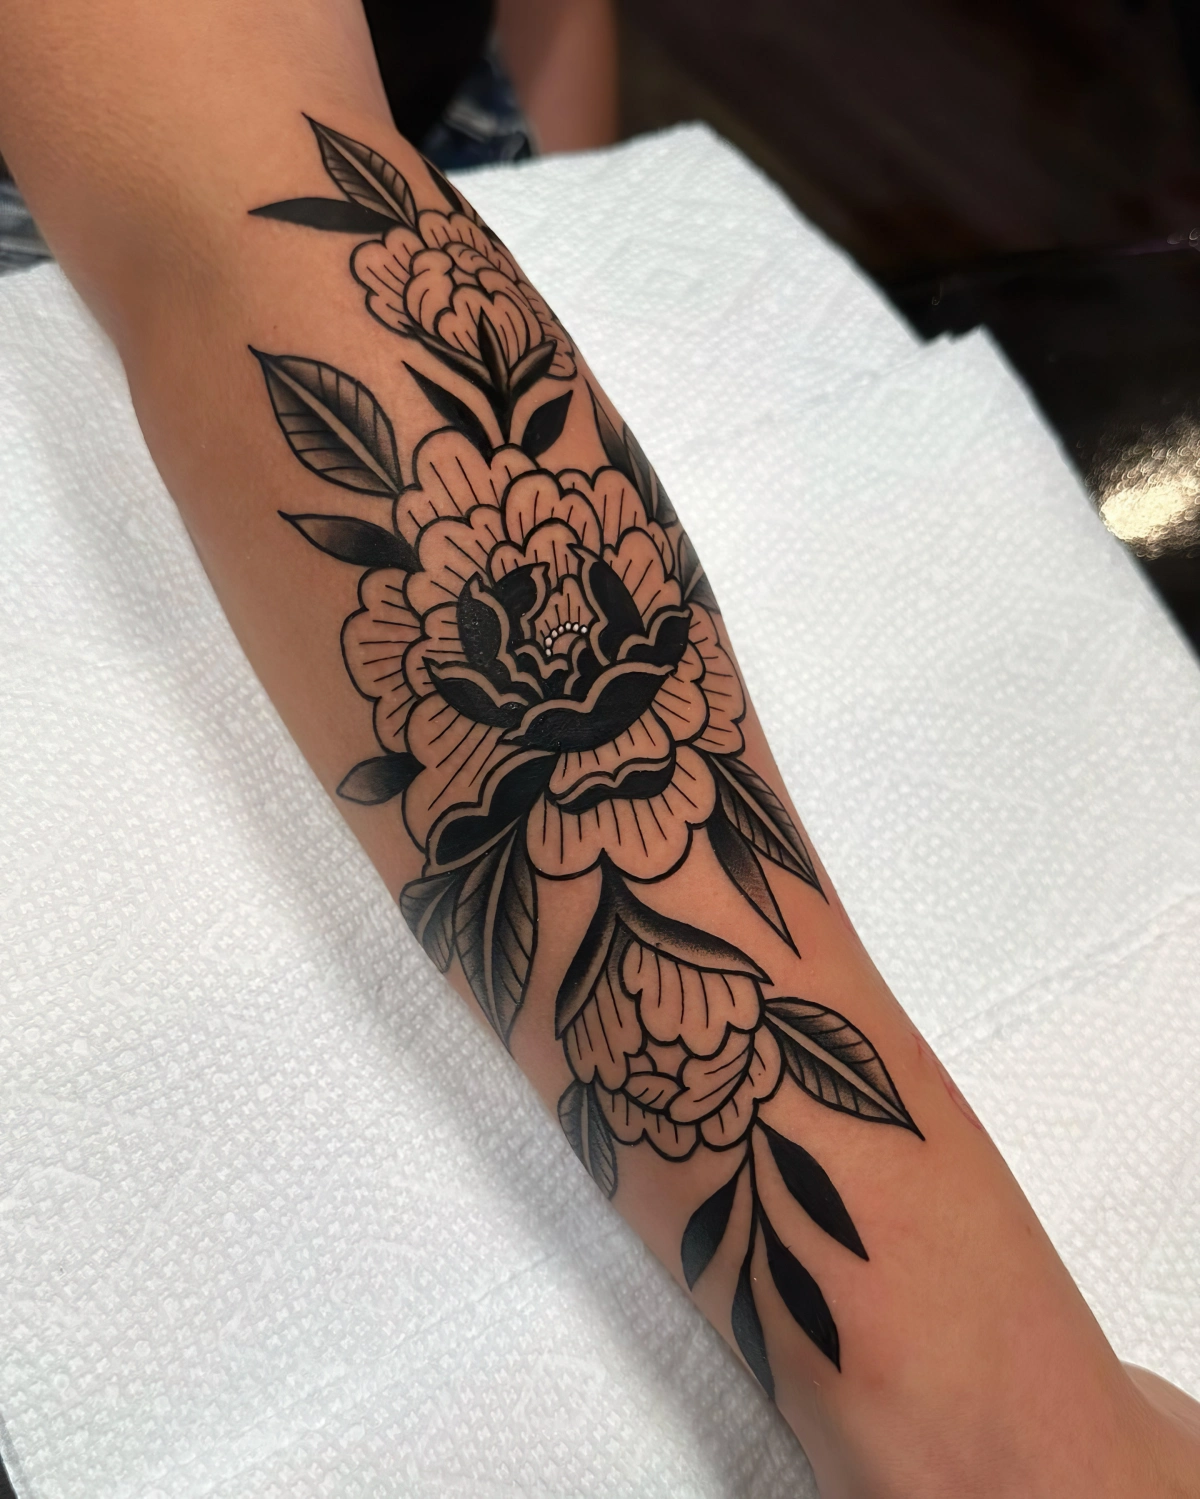 dessin pivoine sur peau contours details noirs fonces tattoo fleur femme